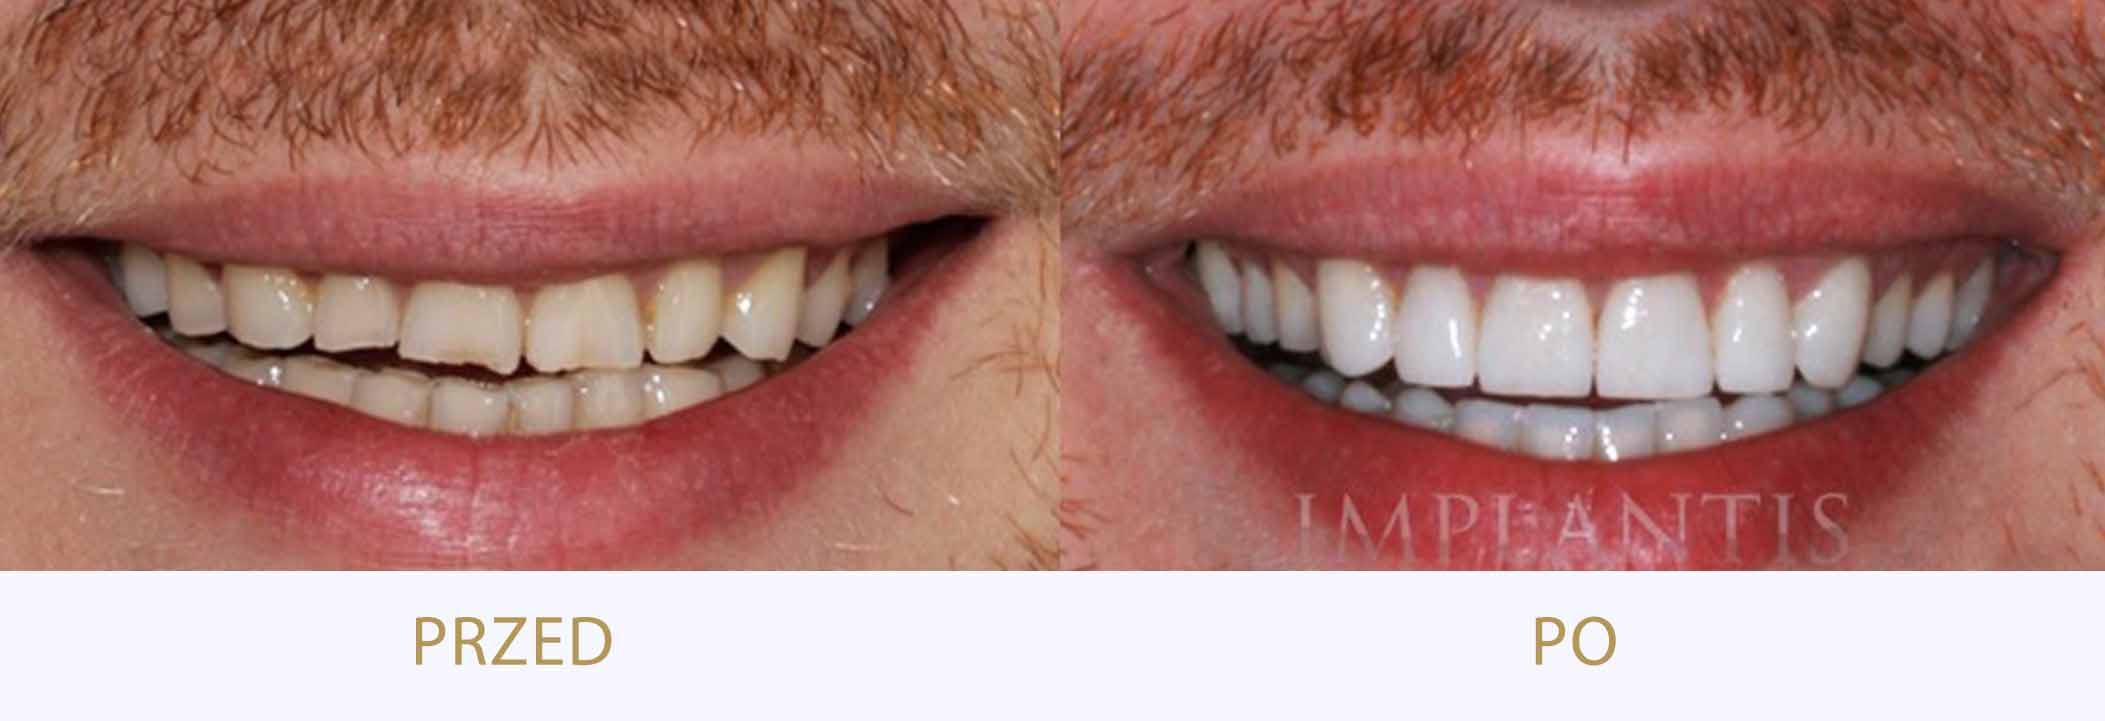 zdjęcia przed i po leczeniu przy użyciu licówek